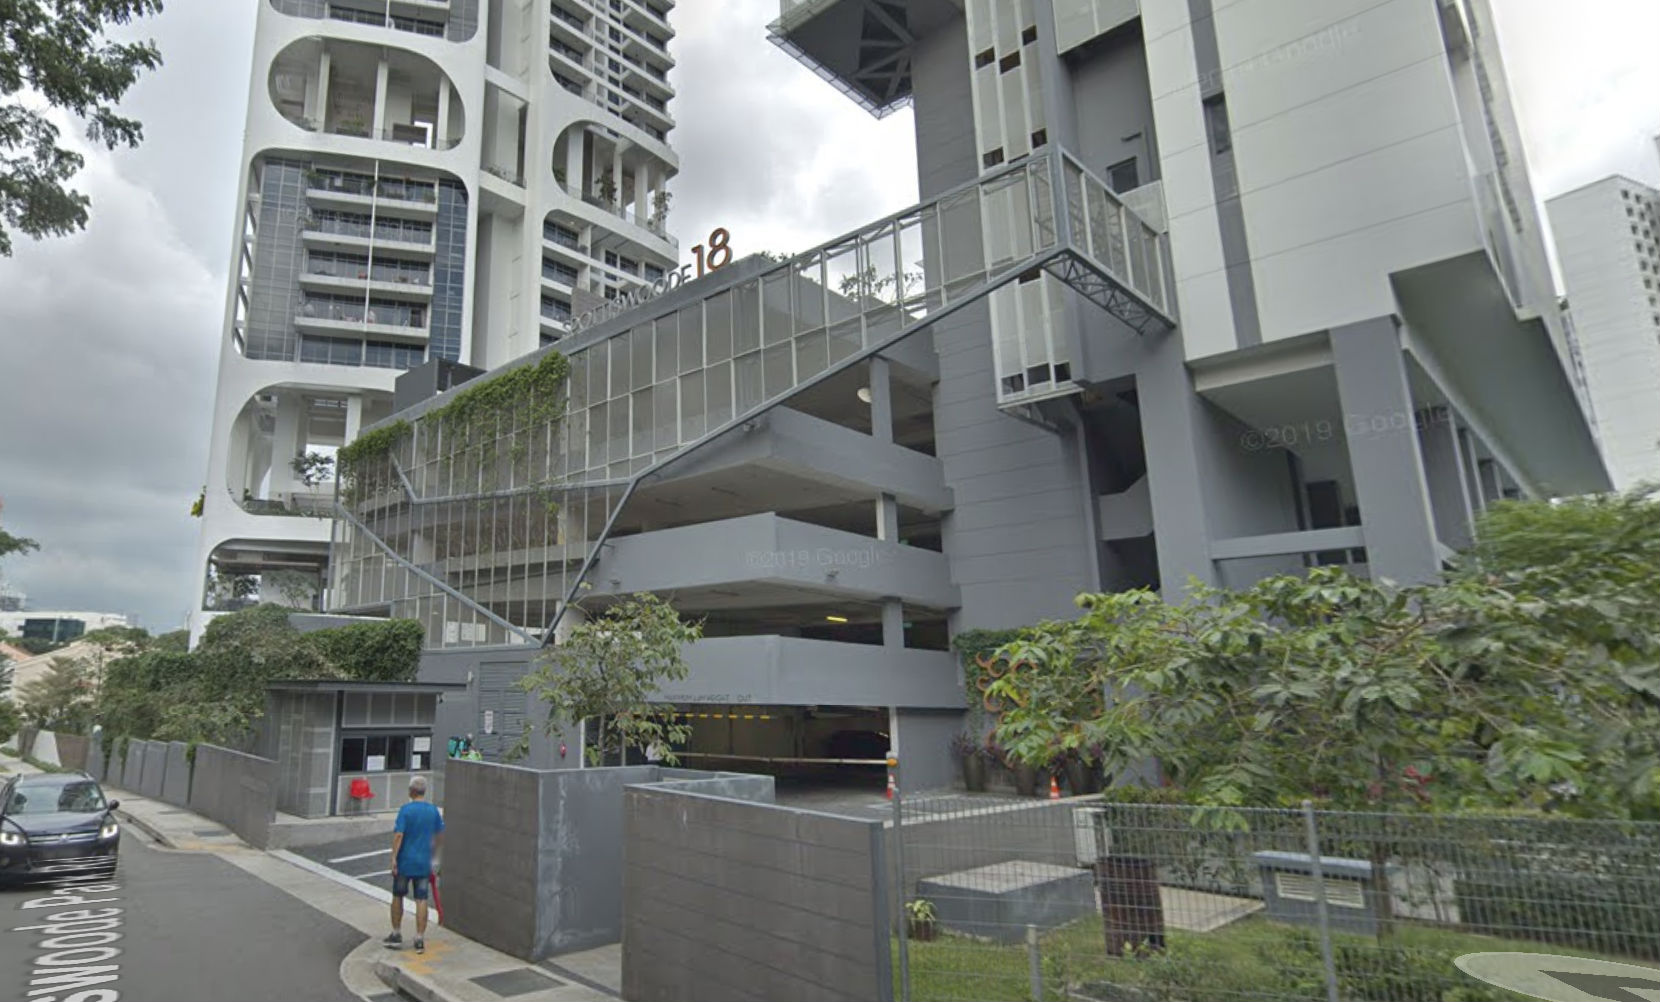 Google Street View of Spottiswoode 18 condominium. 